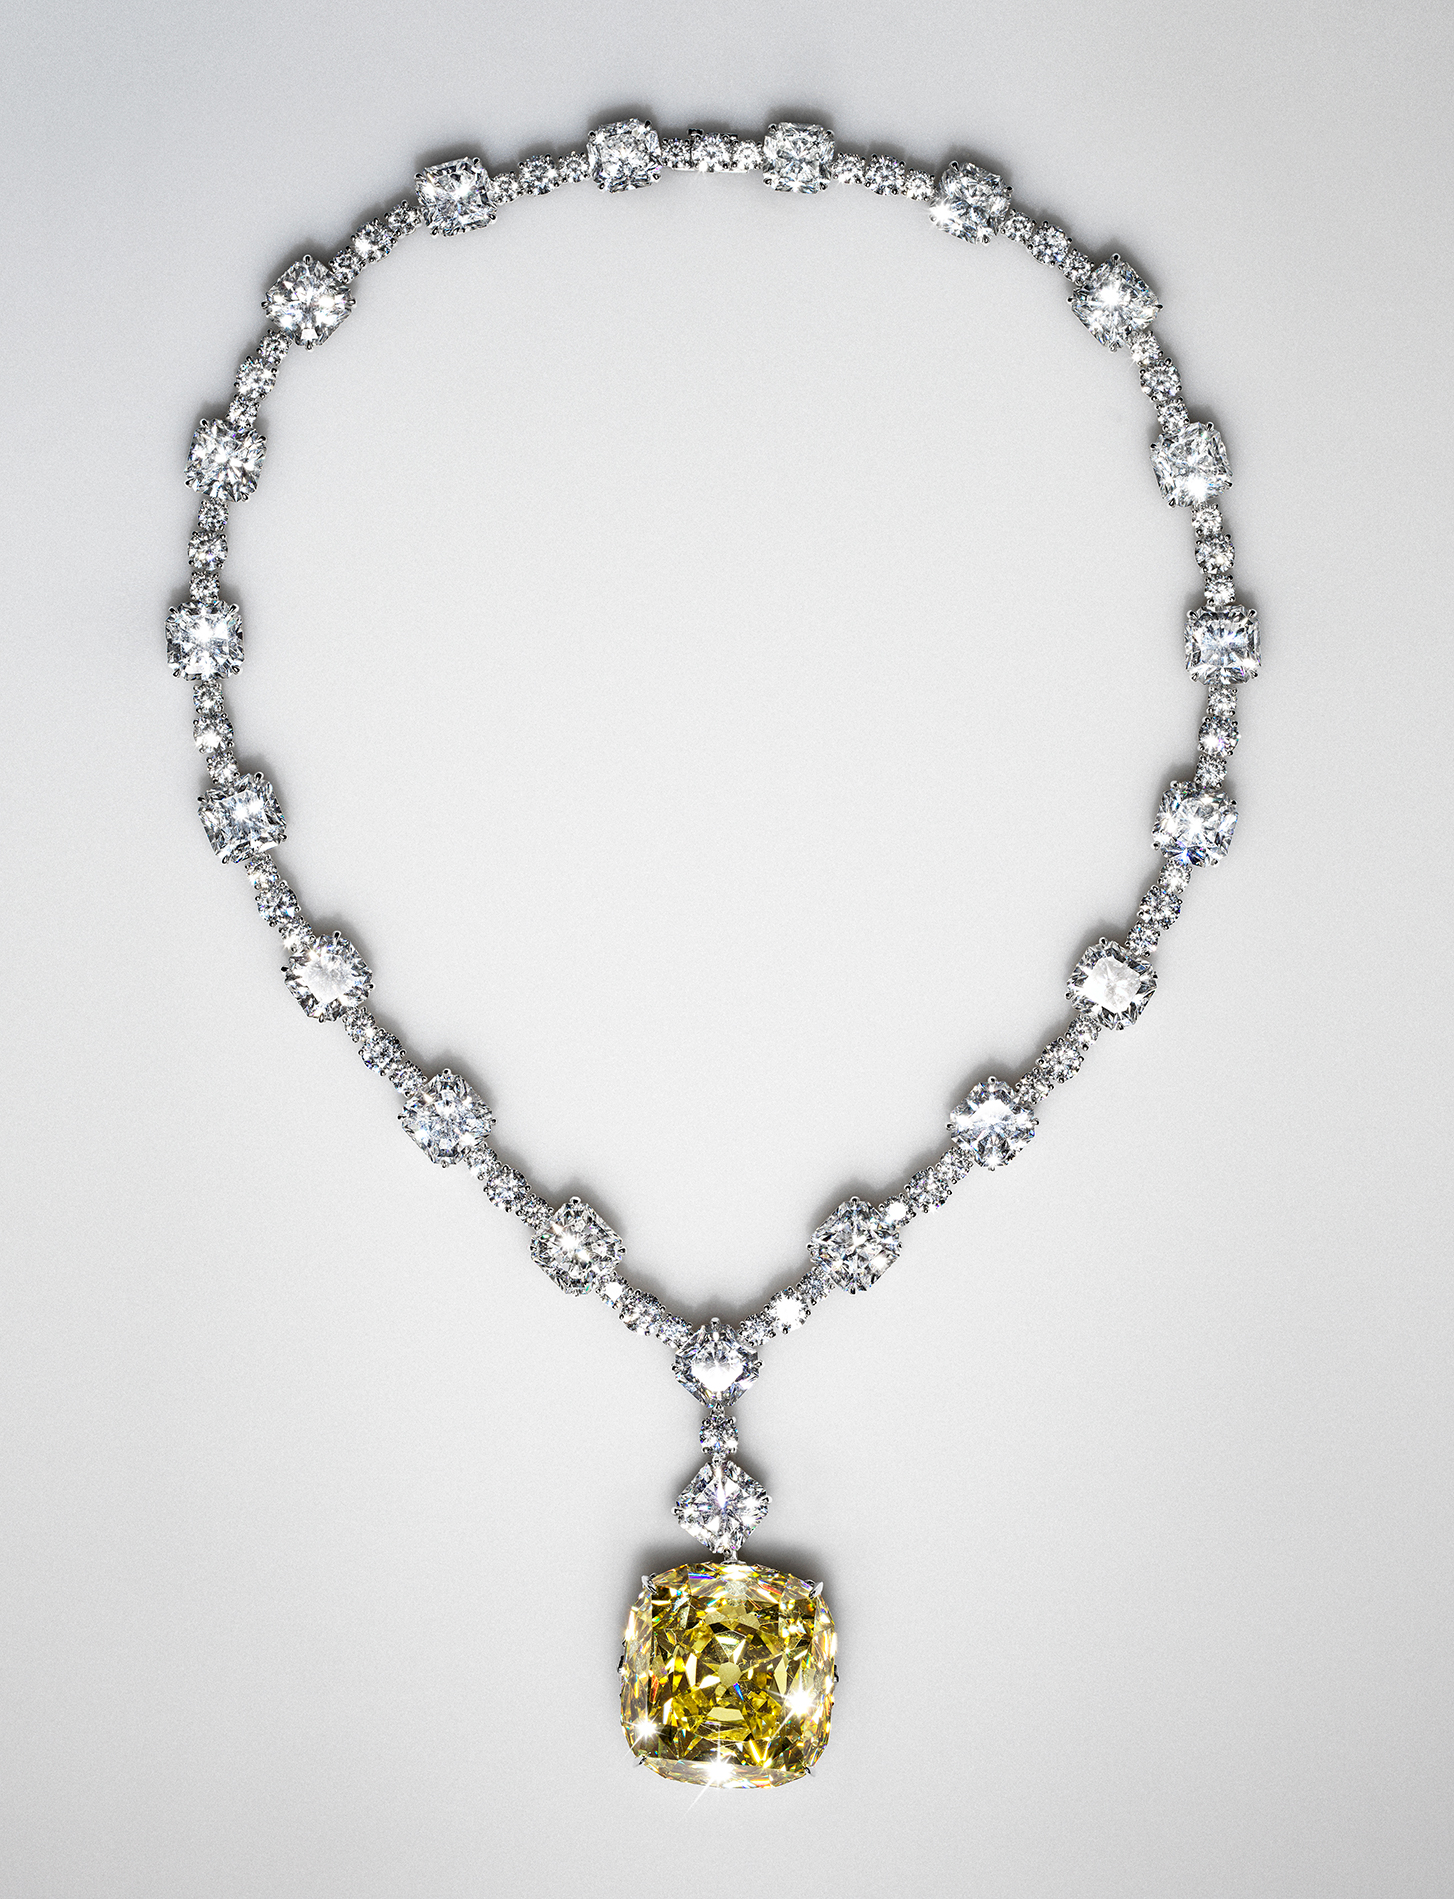 Tiffany Diamond 2012 - Tiffany & Co. và triển lãm “Vision & Virtuosity” – Biên niên sử của bậc thầy kim cương